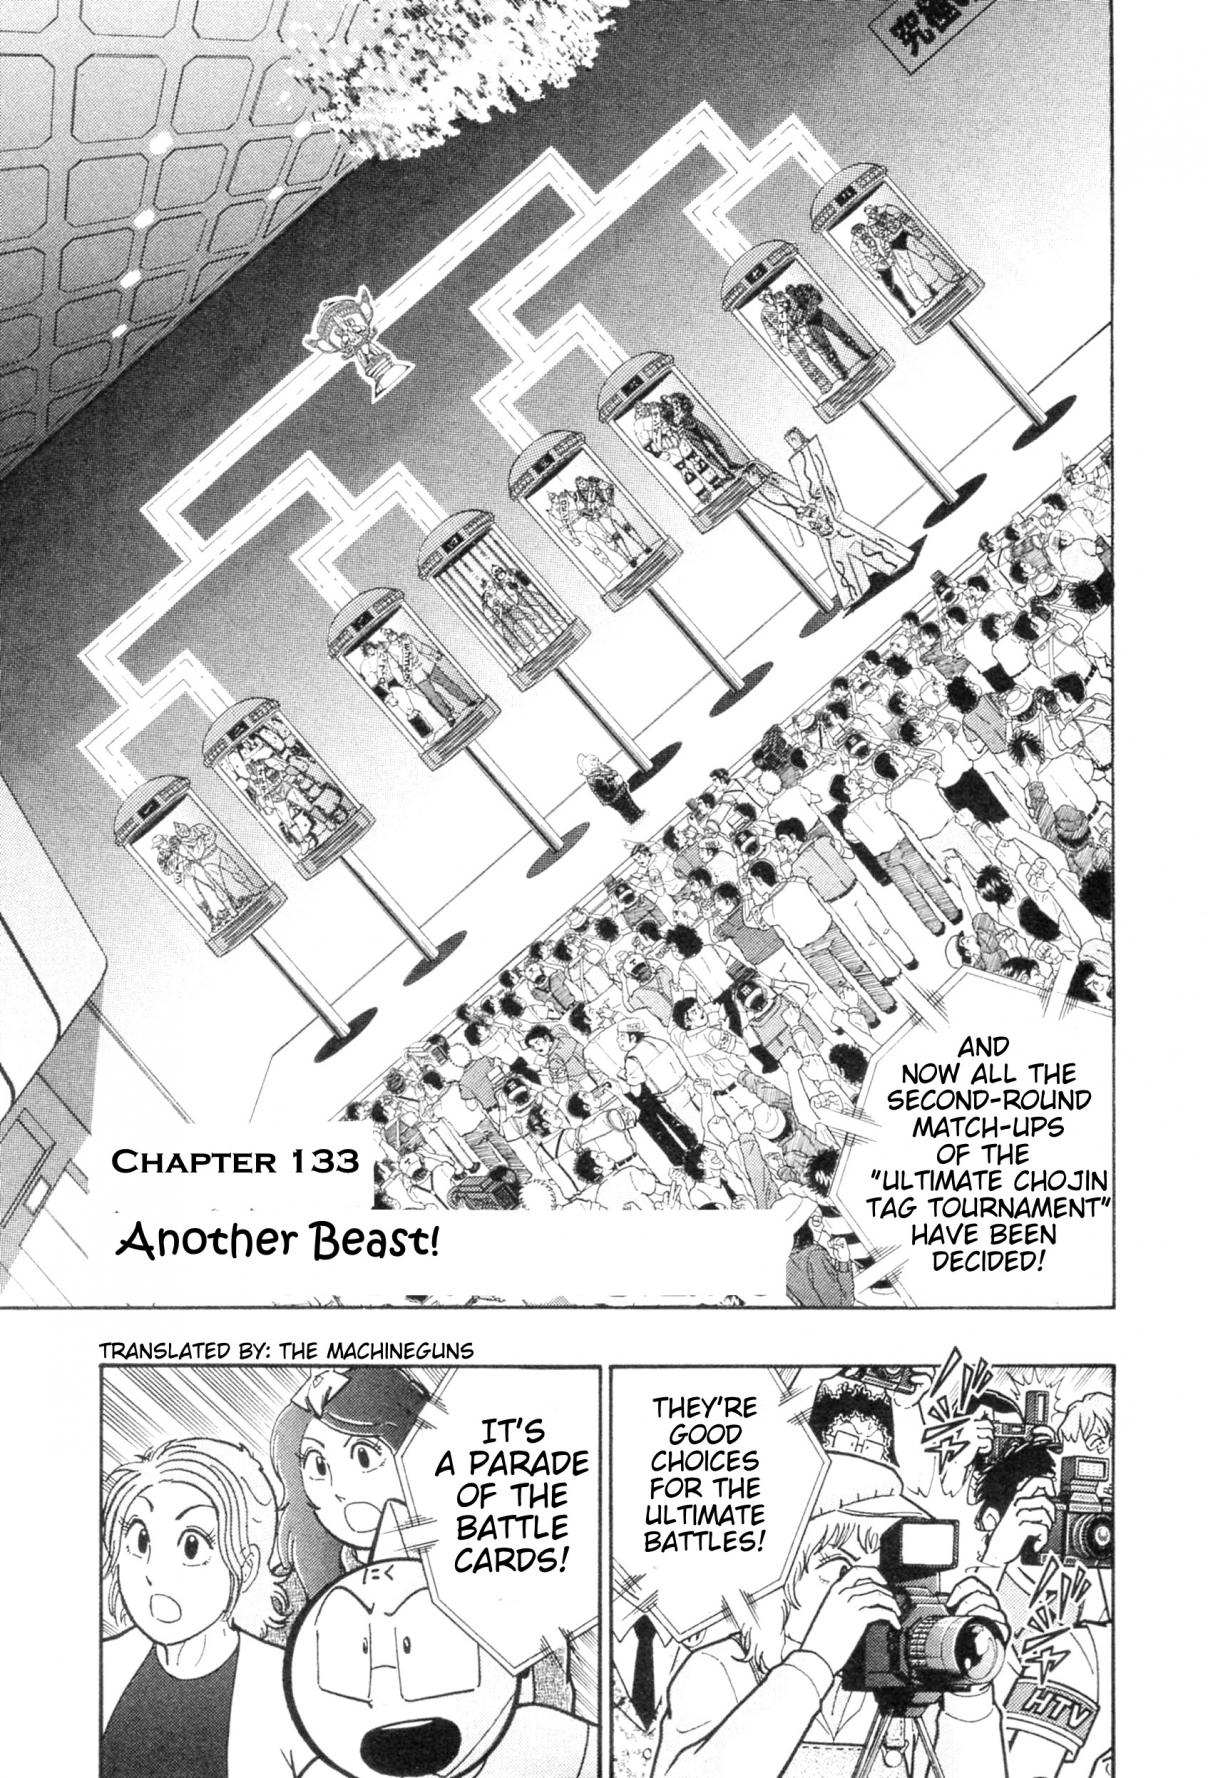 Kinnikuman II Sei: Kyuukyoku Choujin Tag Hen Vol. 11 Ch. 113 Another Beast!